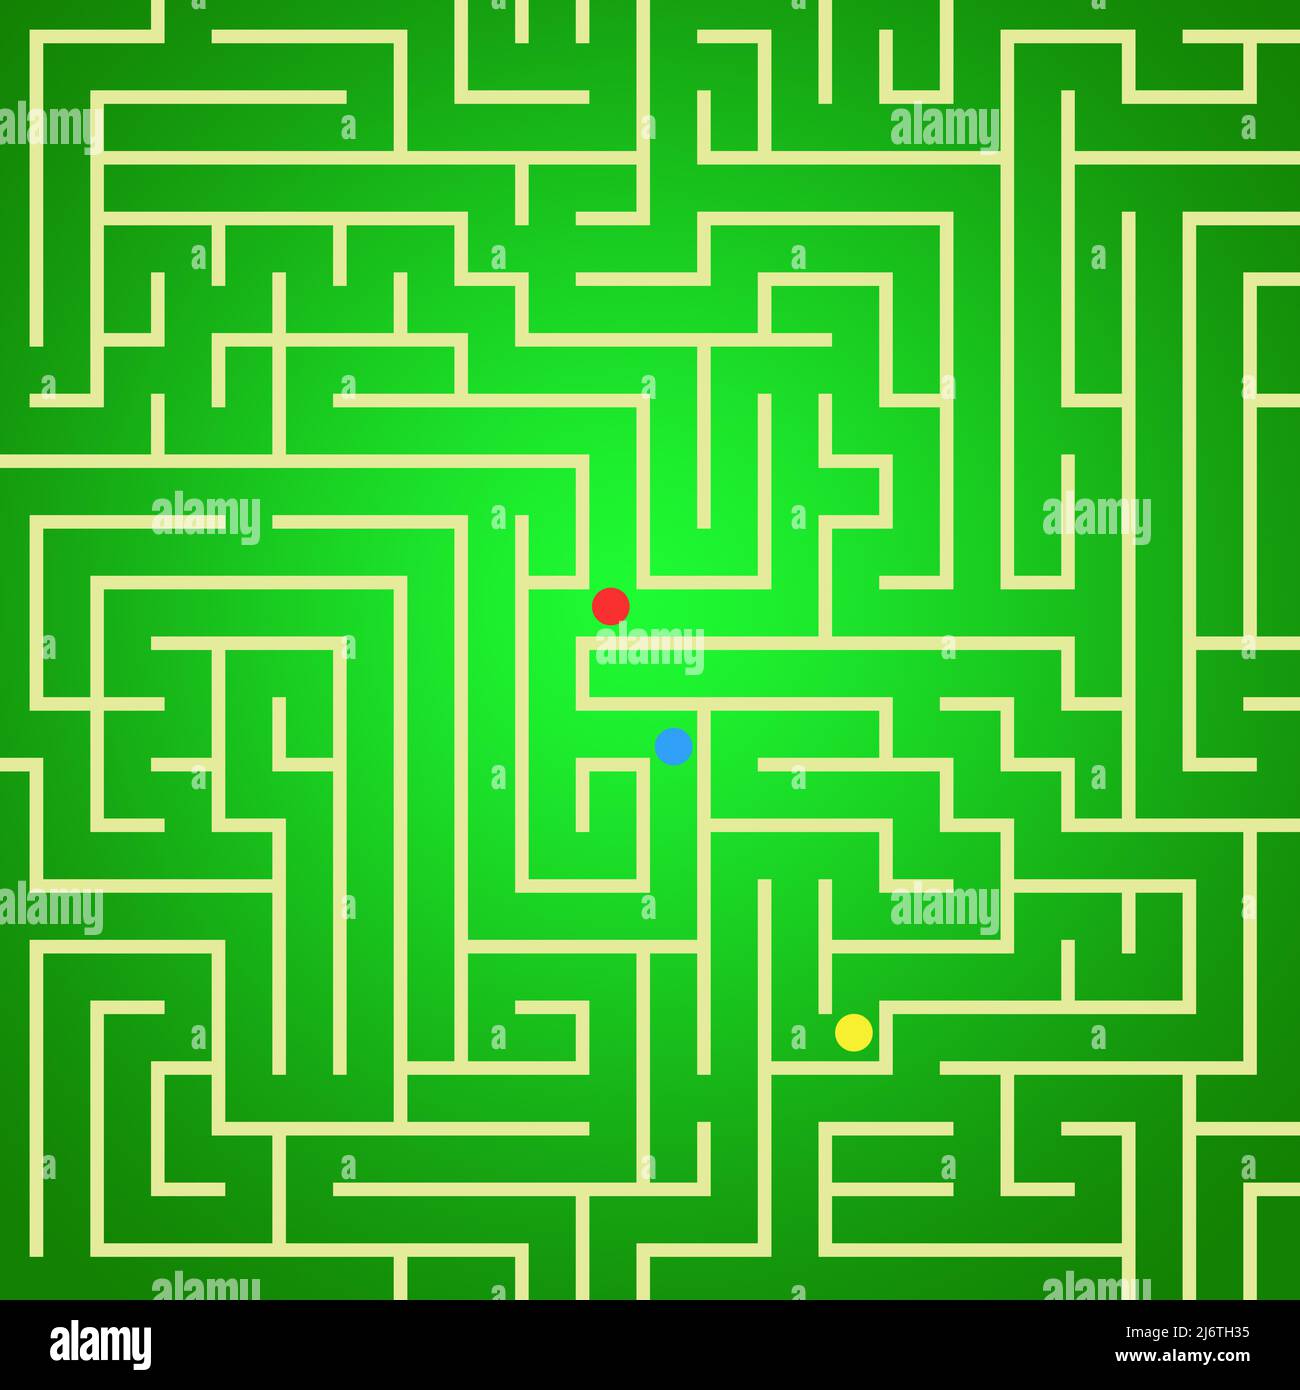 Grünes Labyrinth mit einem roten Punkt darin Stockfoto